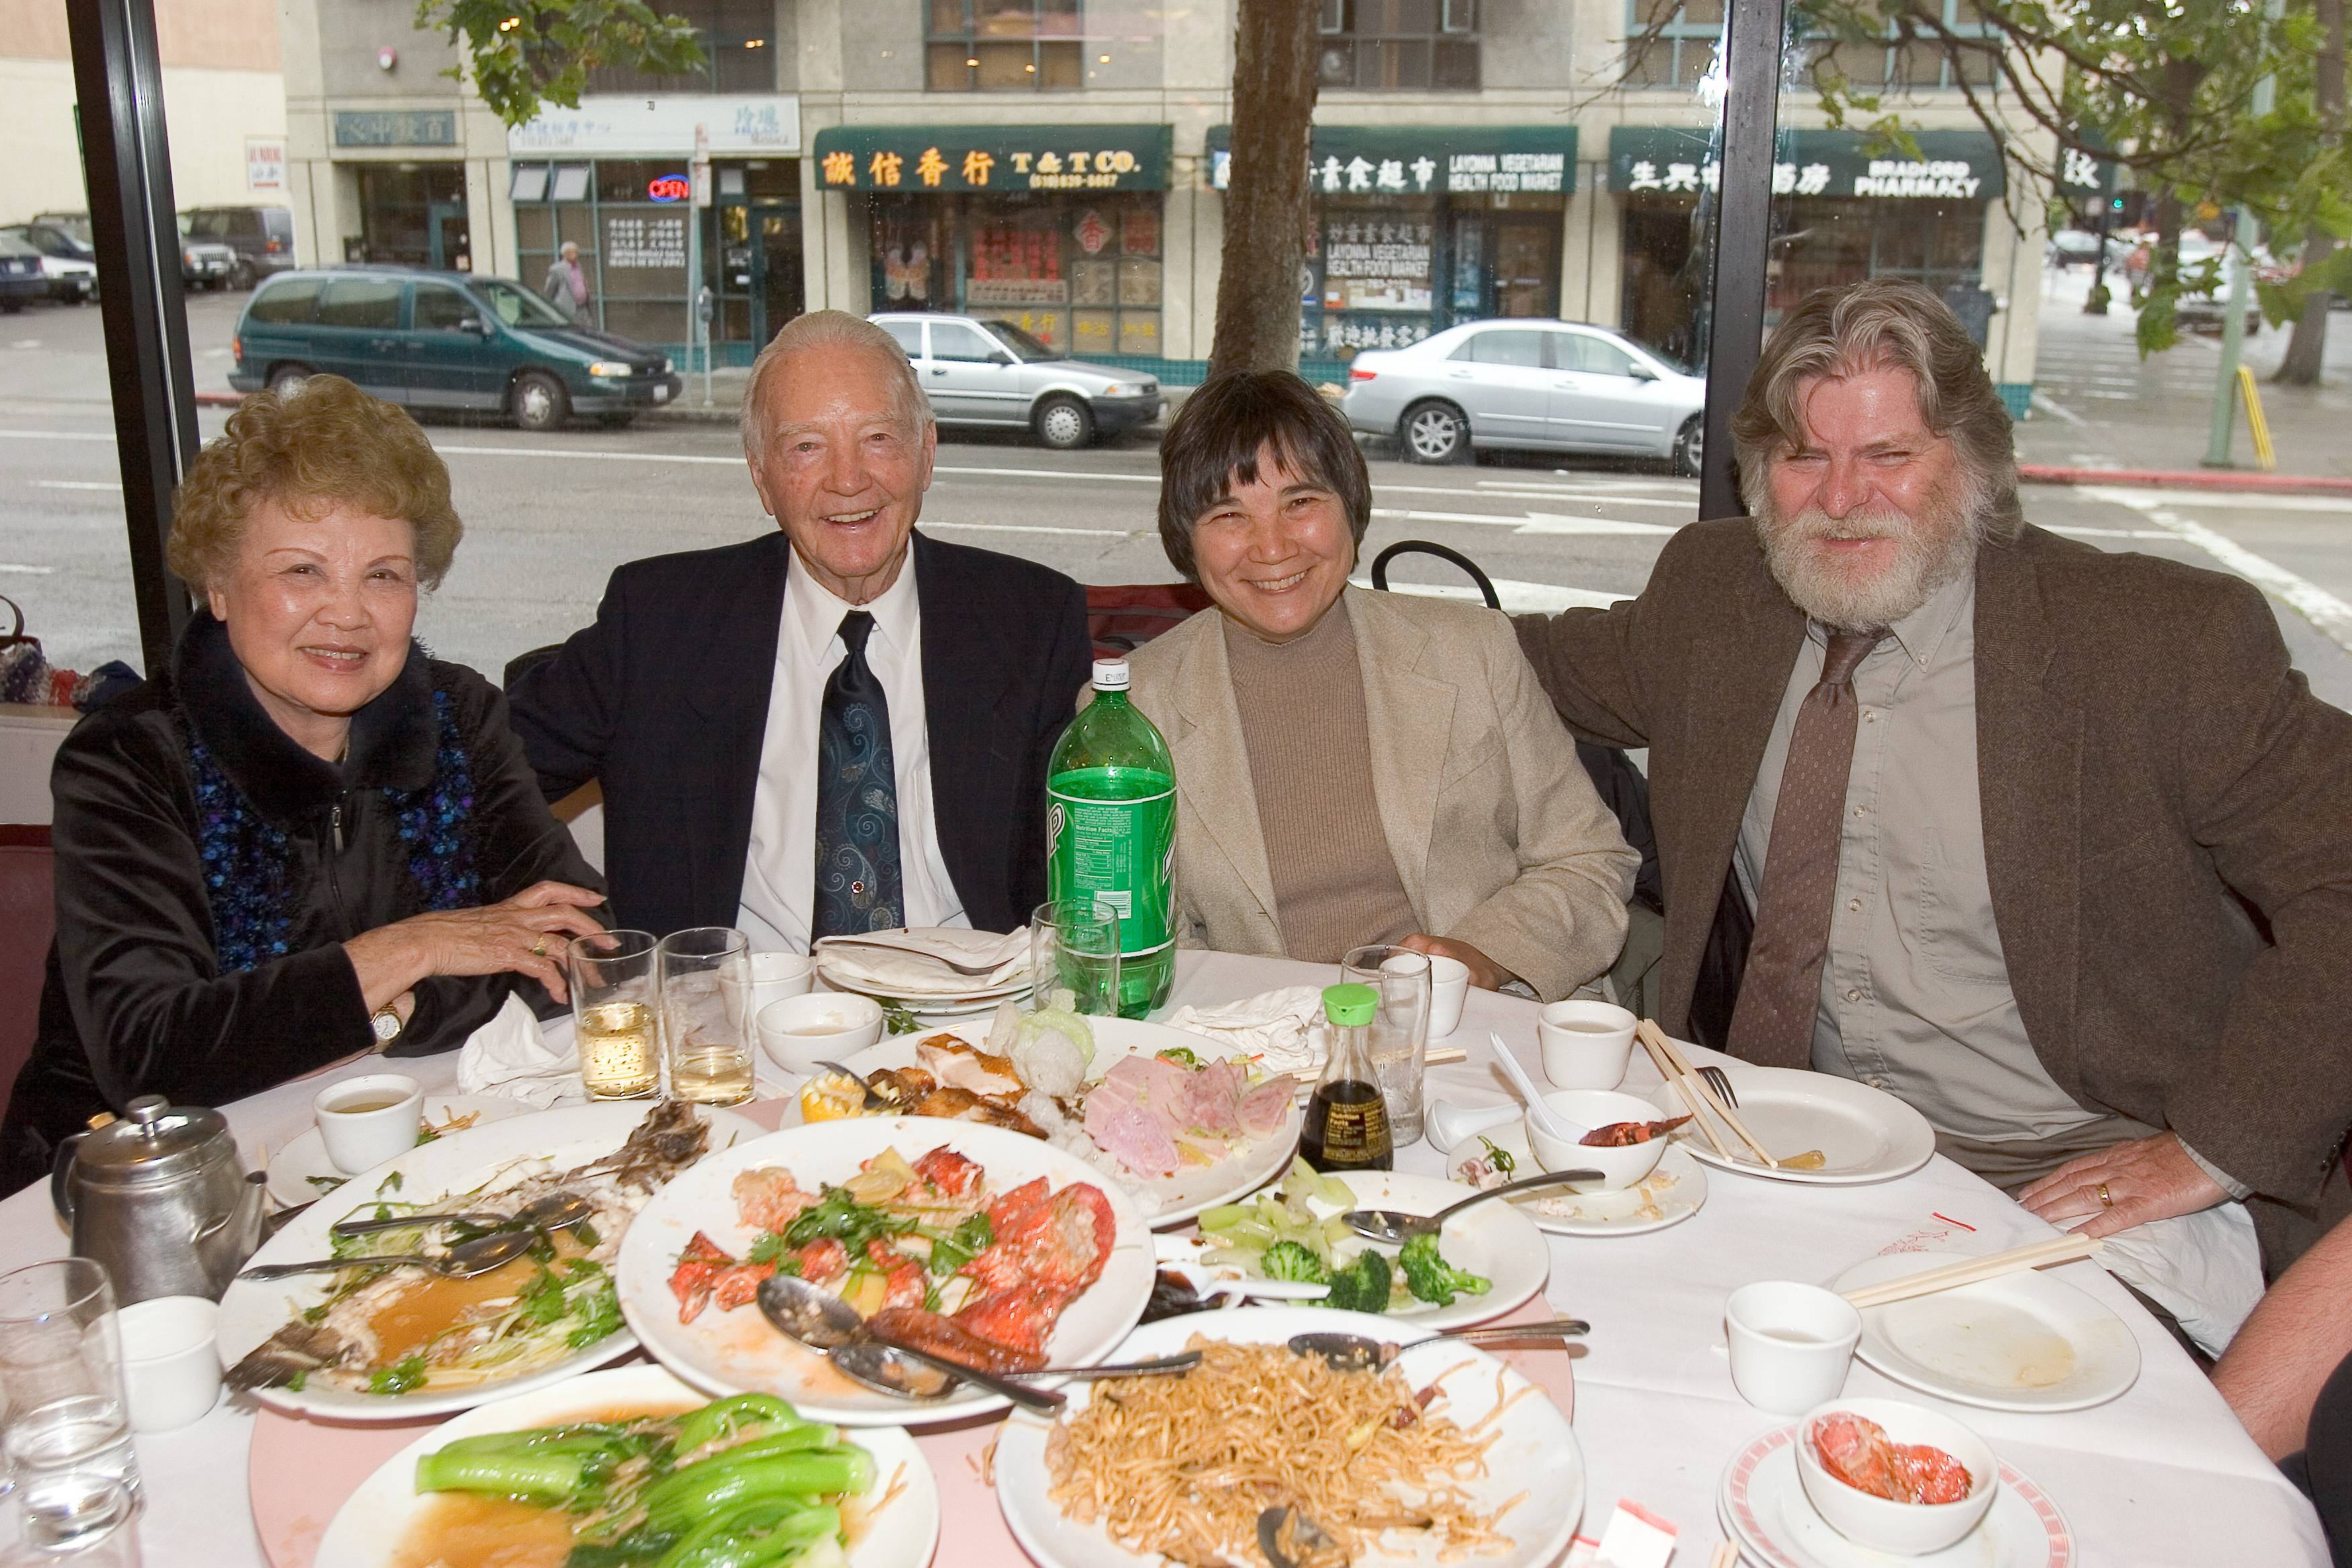 Nancy, Bill, Linda and Robert